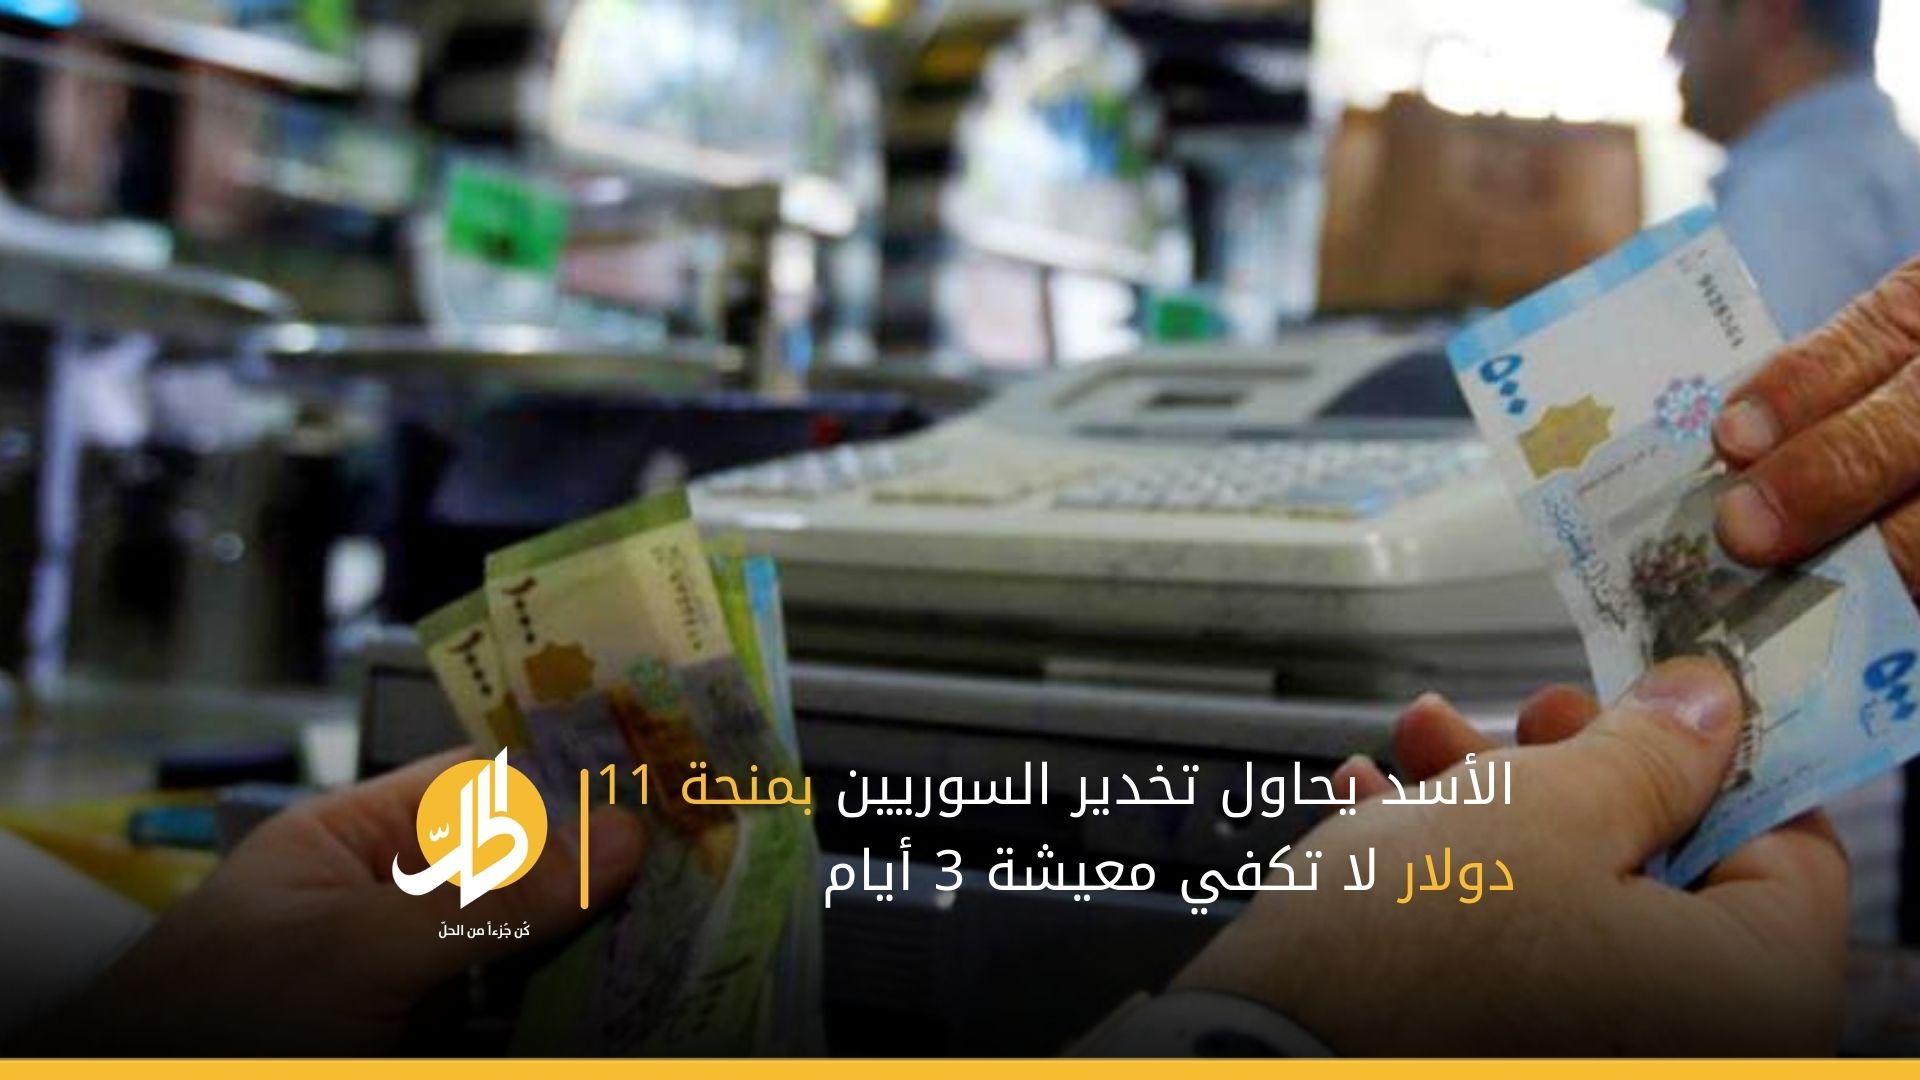 الأسد يحاول تخدير السوريين بمنحة 11 دولار لا تكفي معيشة 3 أيام